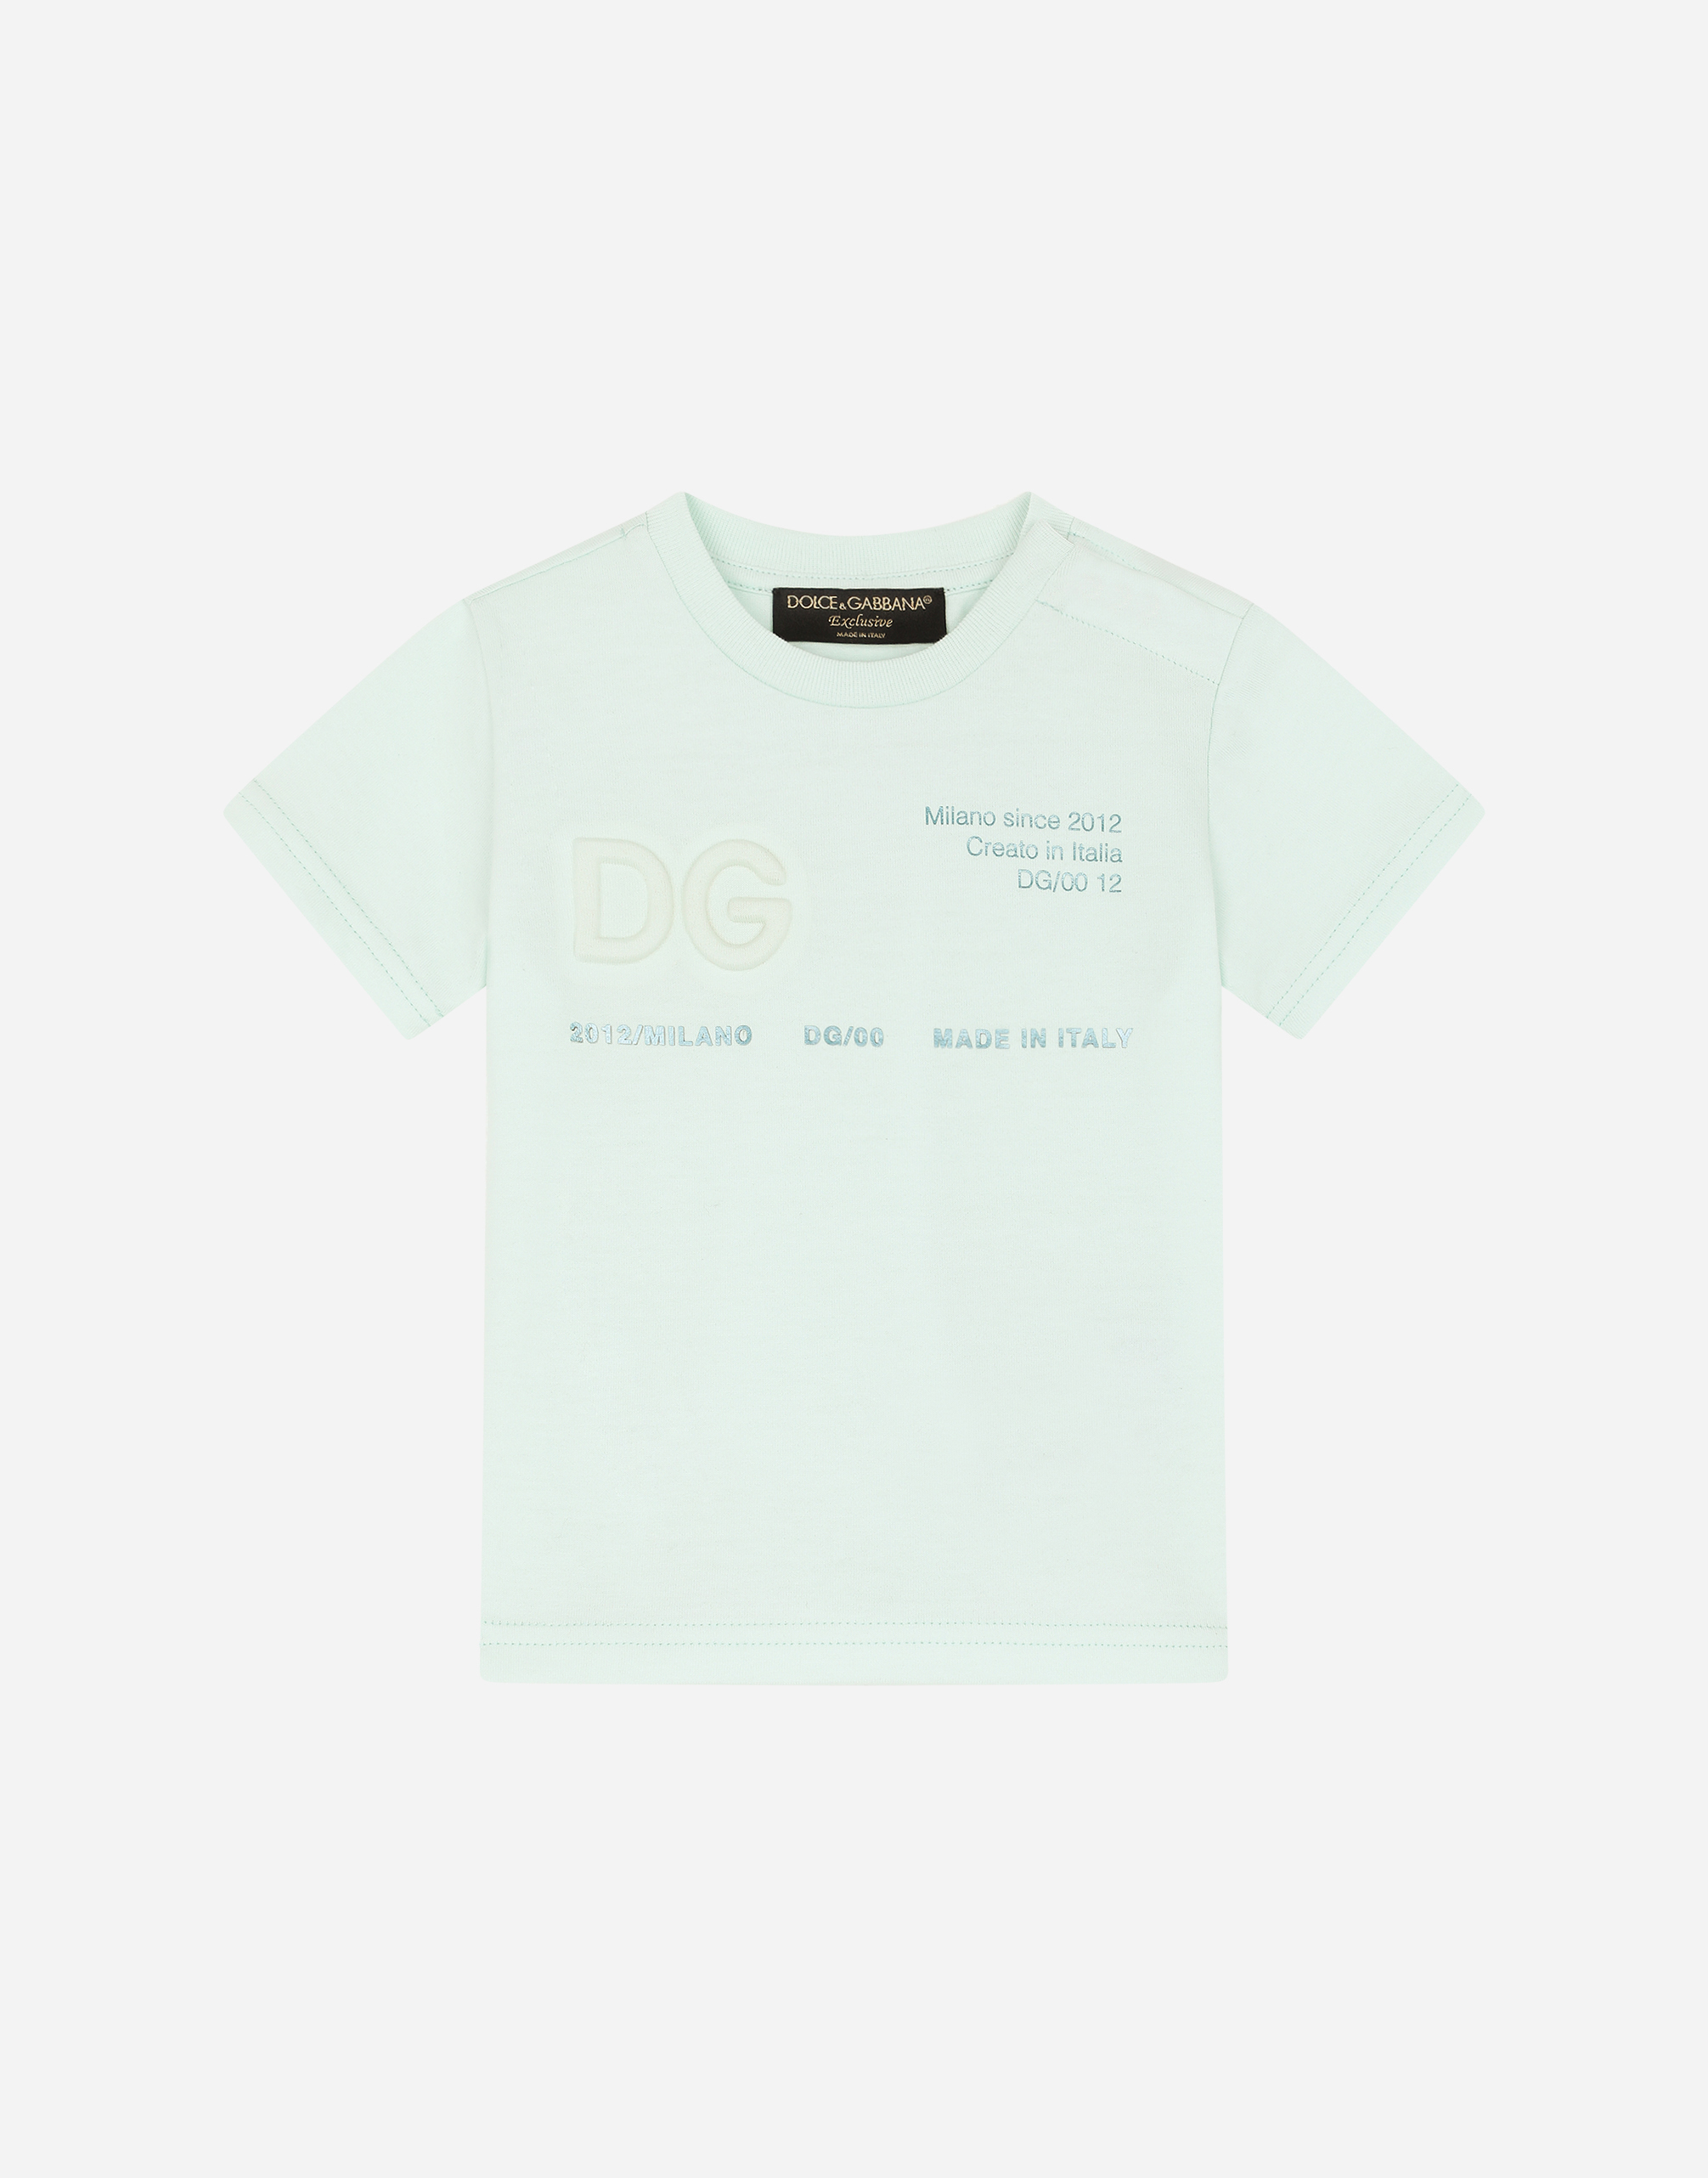 Dolce & Gabbana Kids' Jersey T-shirt With Dolce&gabbana Logo